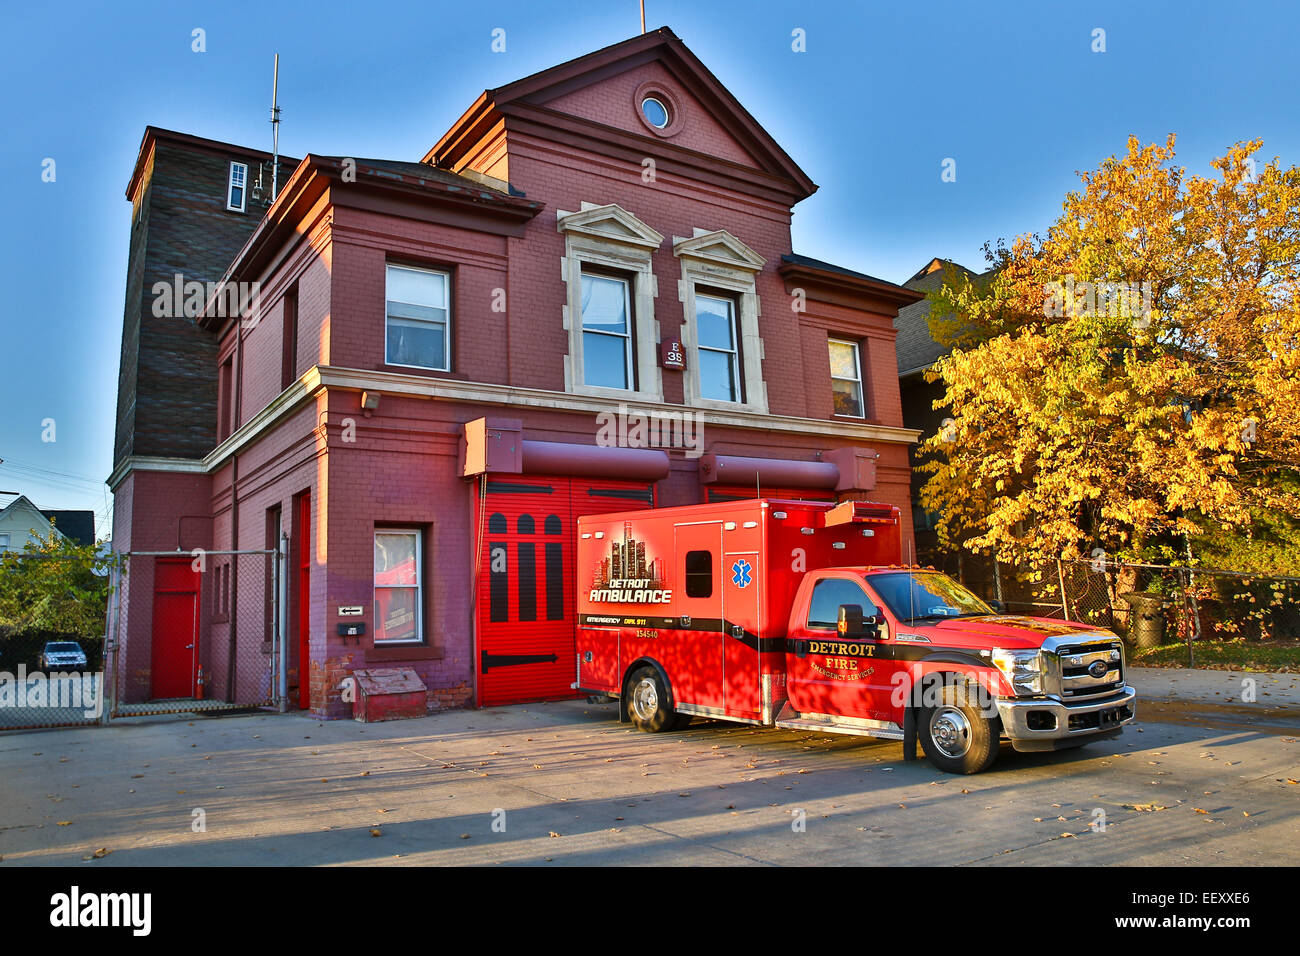 Ambulanza di Detroit il reparto antincendio, Michigan, Stati Uniti d'America, 25 ottobre 2014. Foto Stock